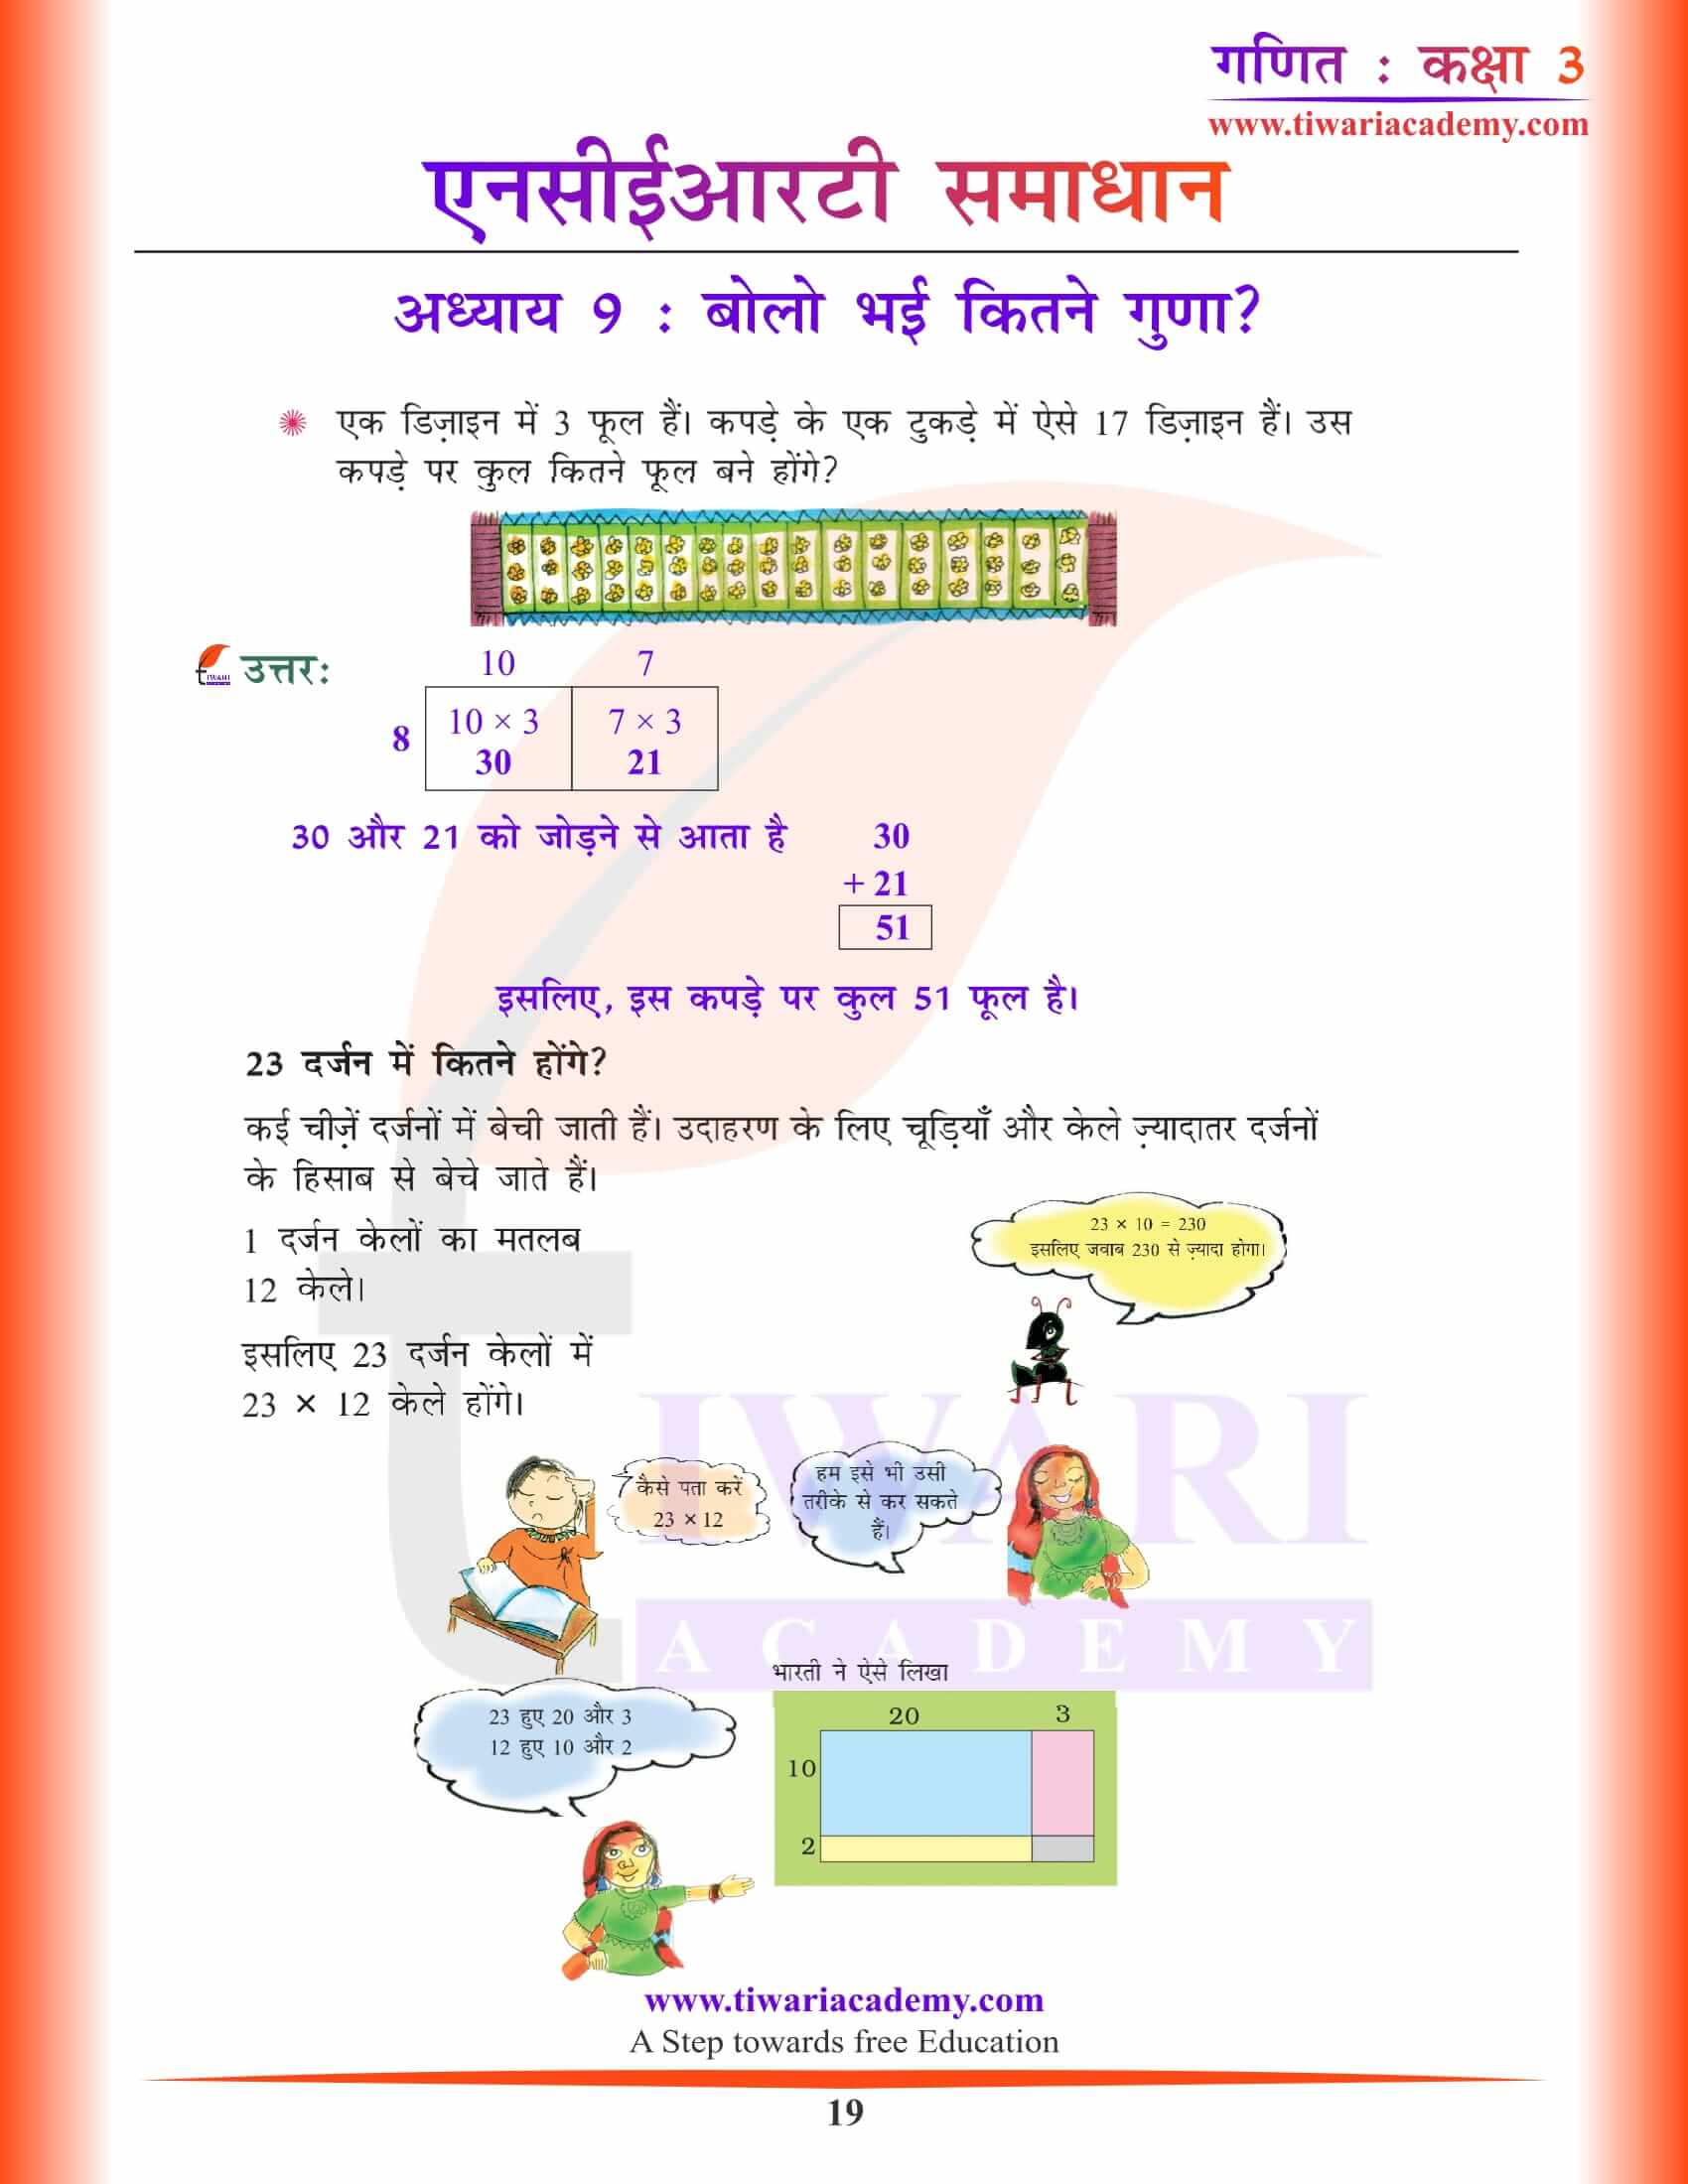 कक्षा 3 गणित अध्याय 9 हिंदी में सवाल जवाब